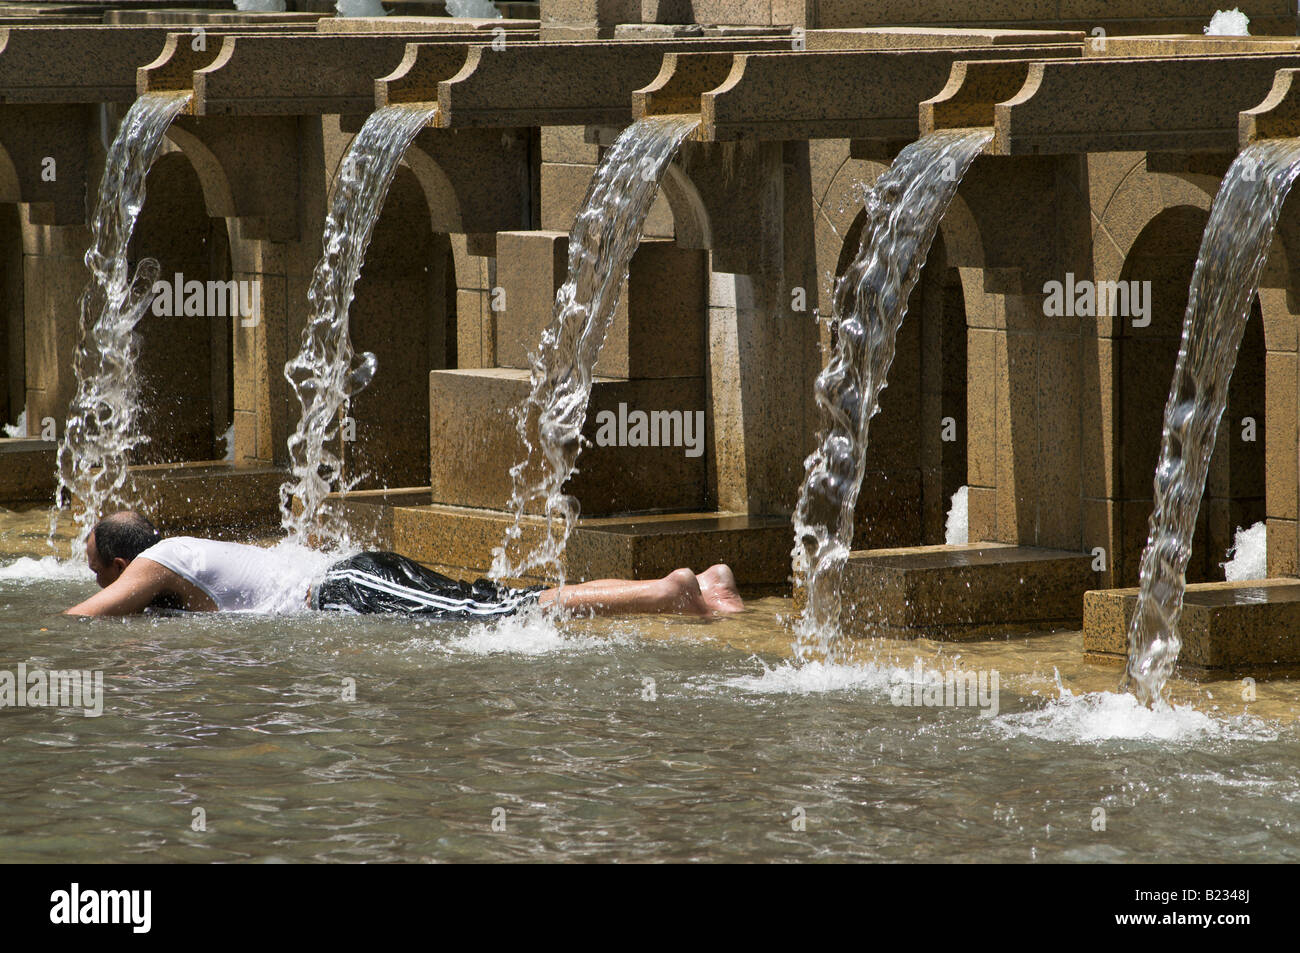 Un homme refroidit dans une fontaine publique pendant une vague de chaleur à Boston Ma. Banque D'Images